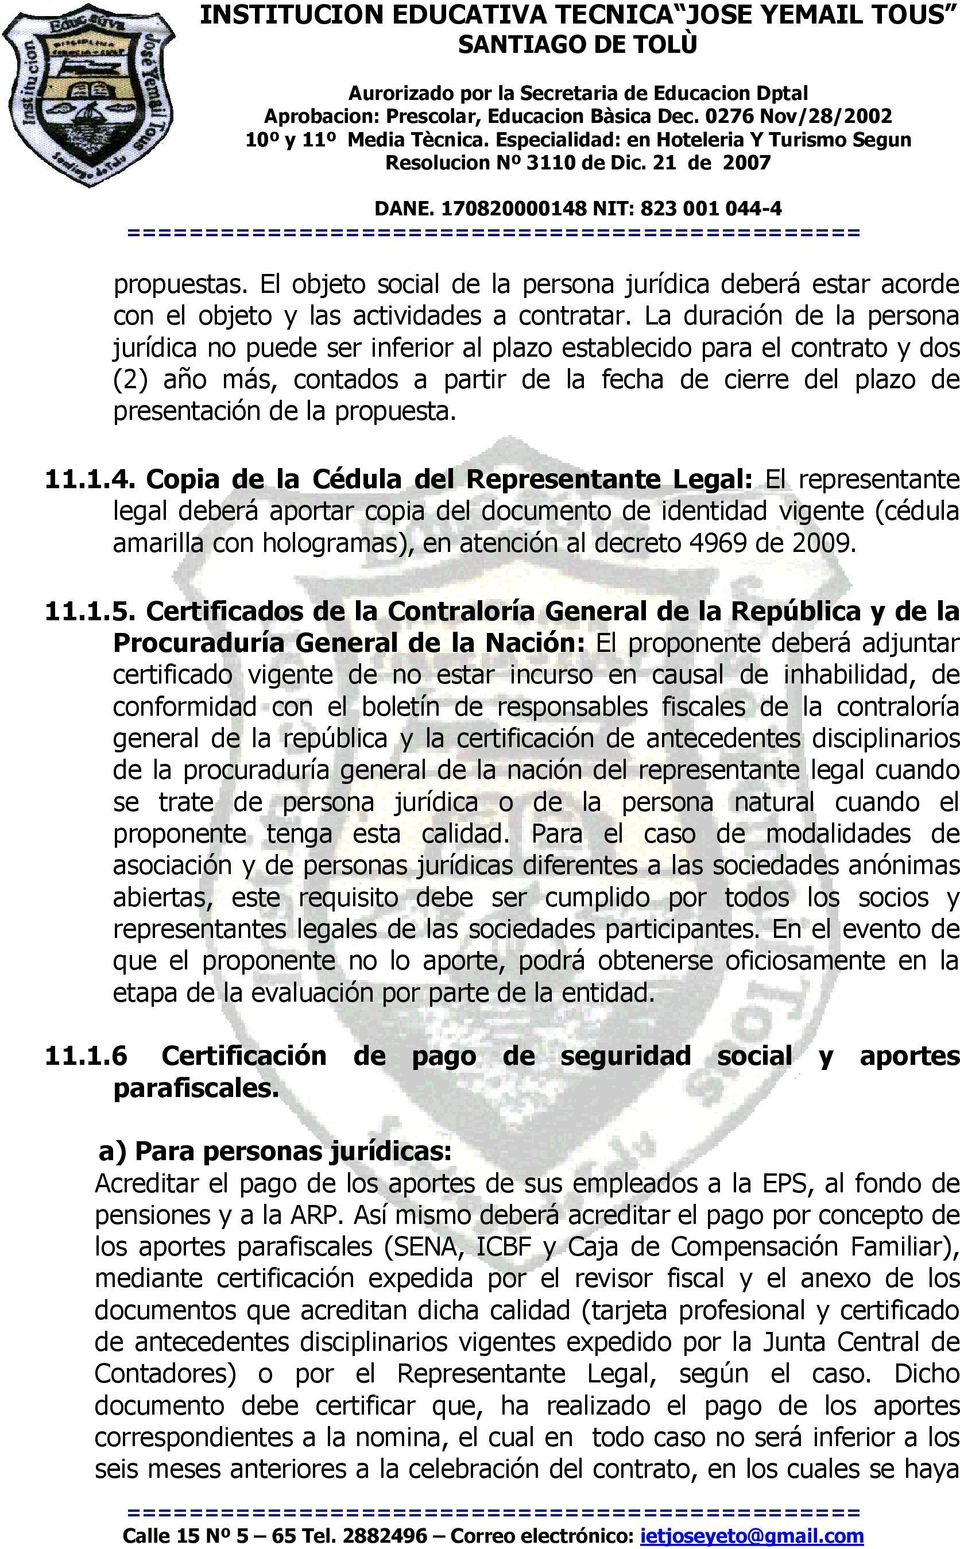 1.4. Copia de la Cédula del Representante Legal: El representante legal deberá aportar copia del documento de identidad vigente (cédula amarilla con hologramas), en atención al decreto 4969 de 2009.